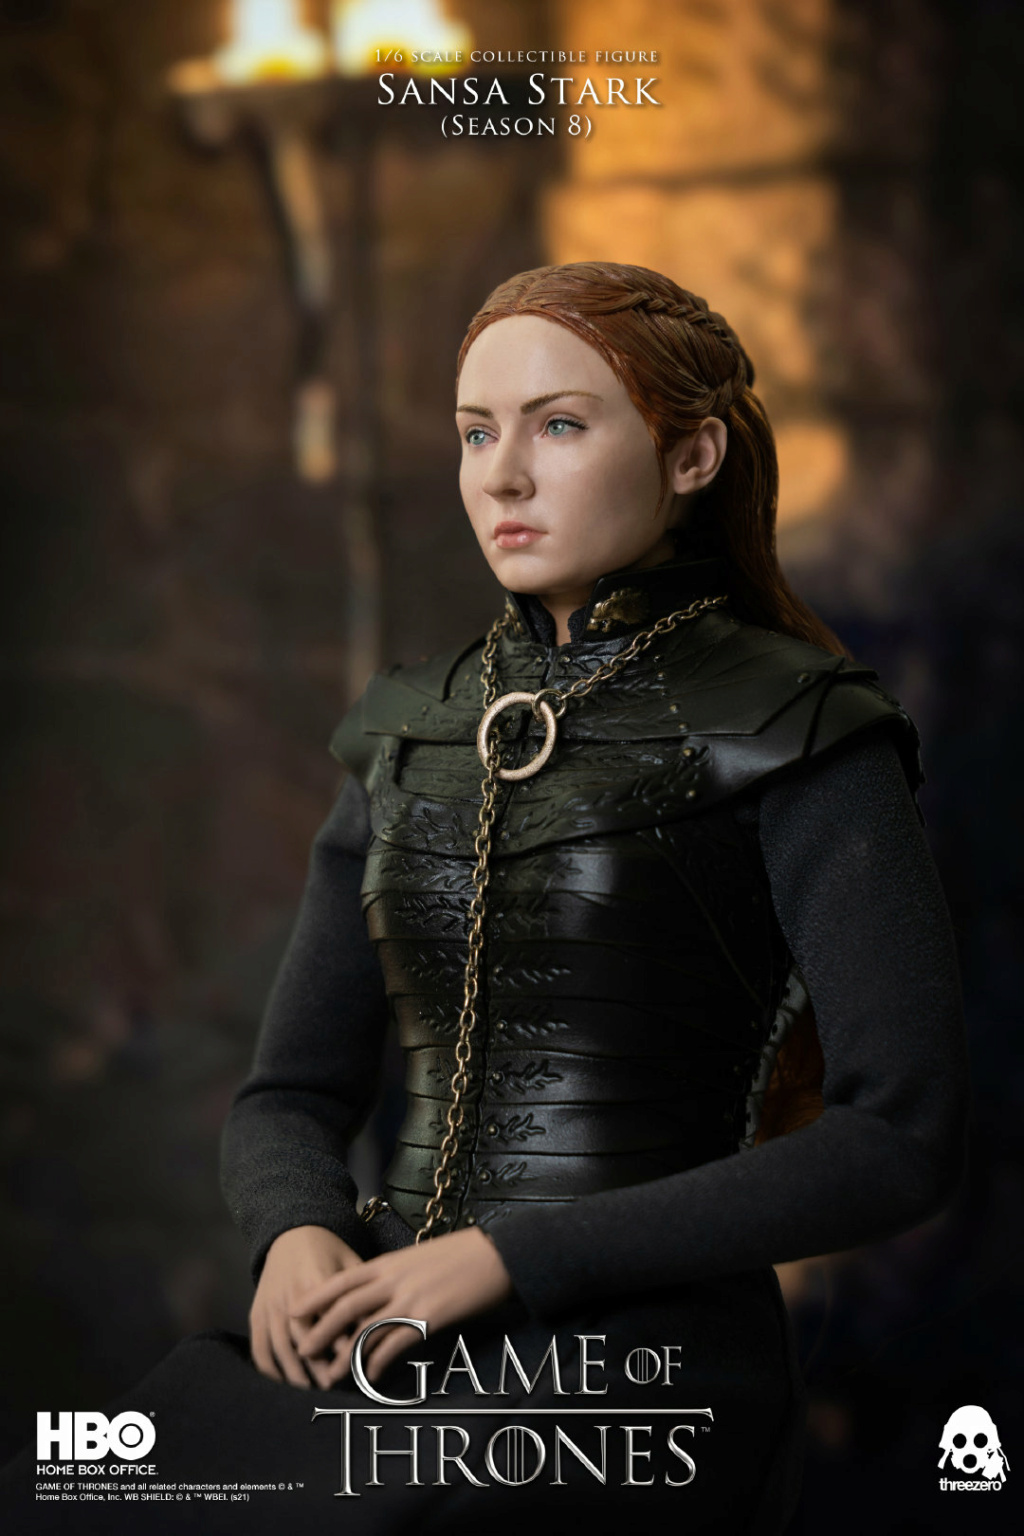 SansaStark - NEW PRODUCT: Threezero: 1/6 "A Song of Ice and Fire: Game of Thrones" Sansa Stark/Sansa Stark Action Figure 10183210